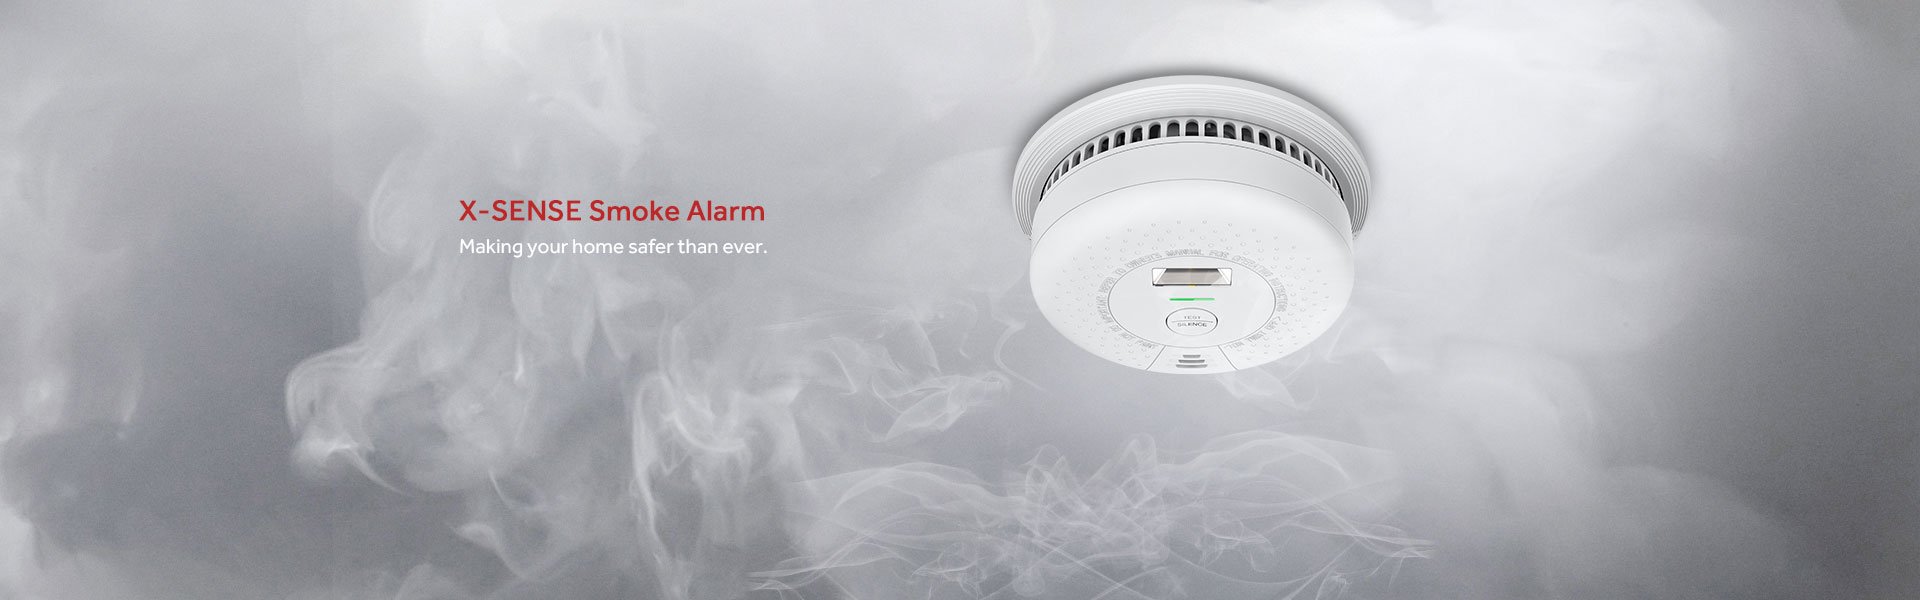 Bildresultat för X-Sense Smoke Alarm SD01